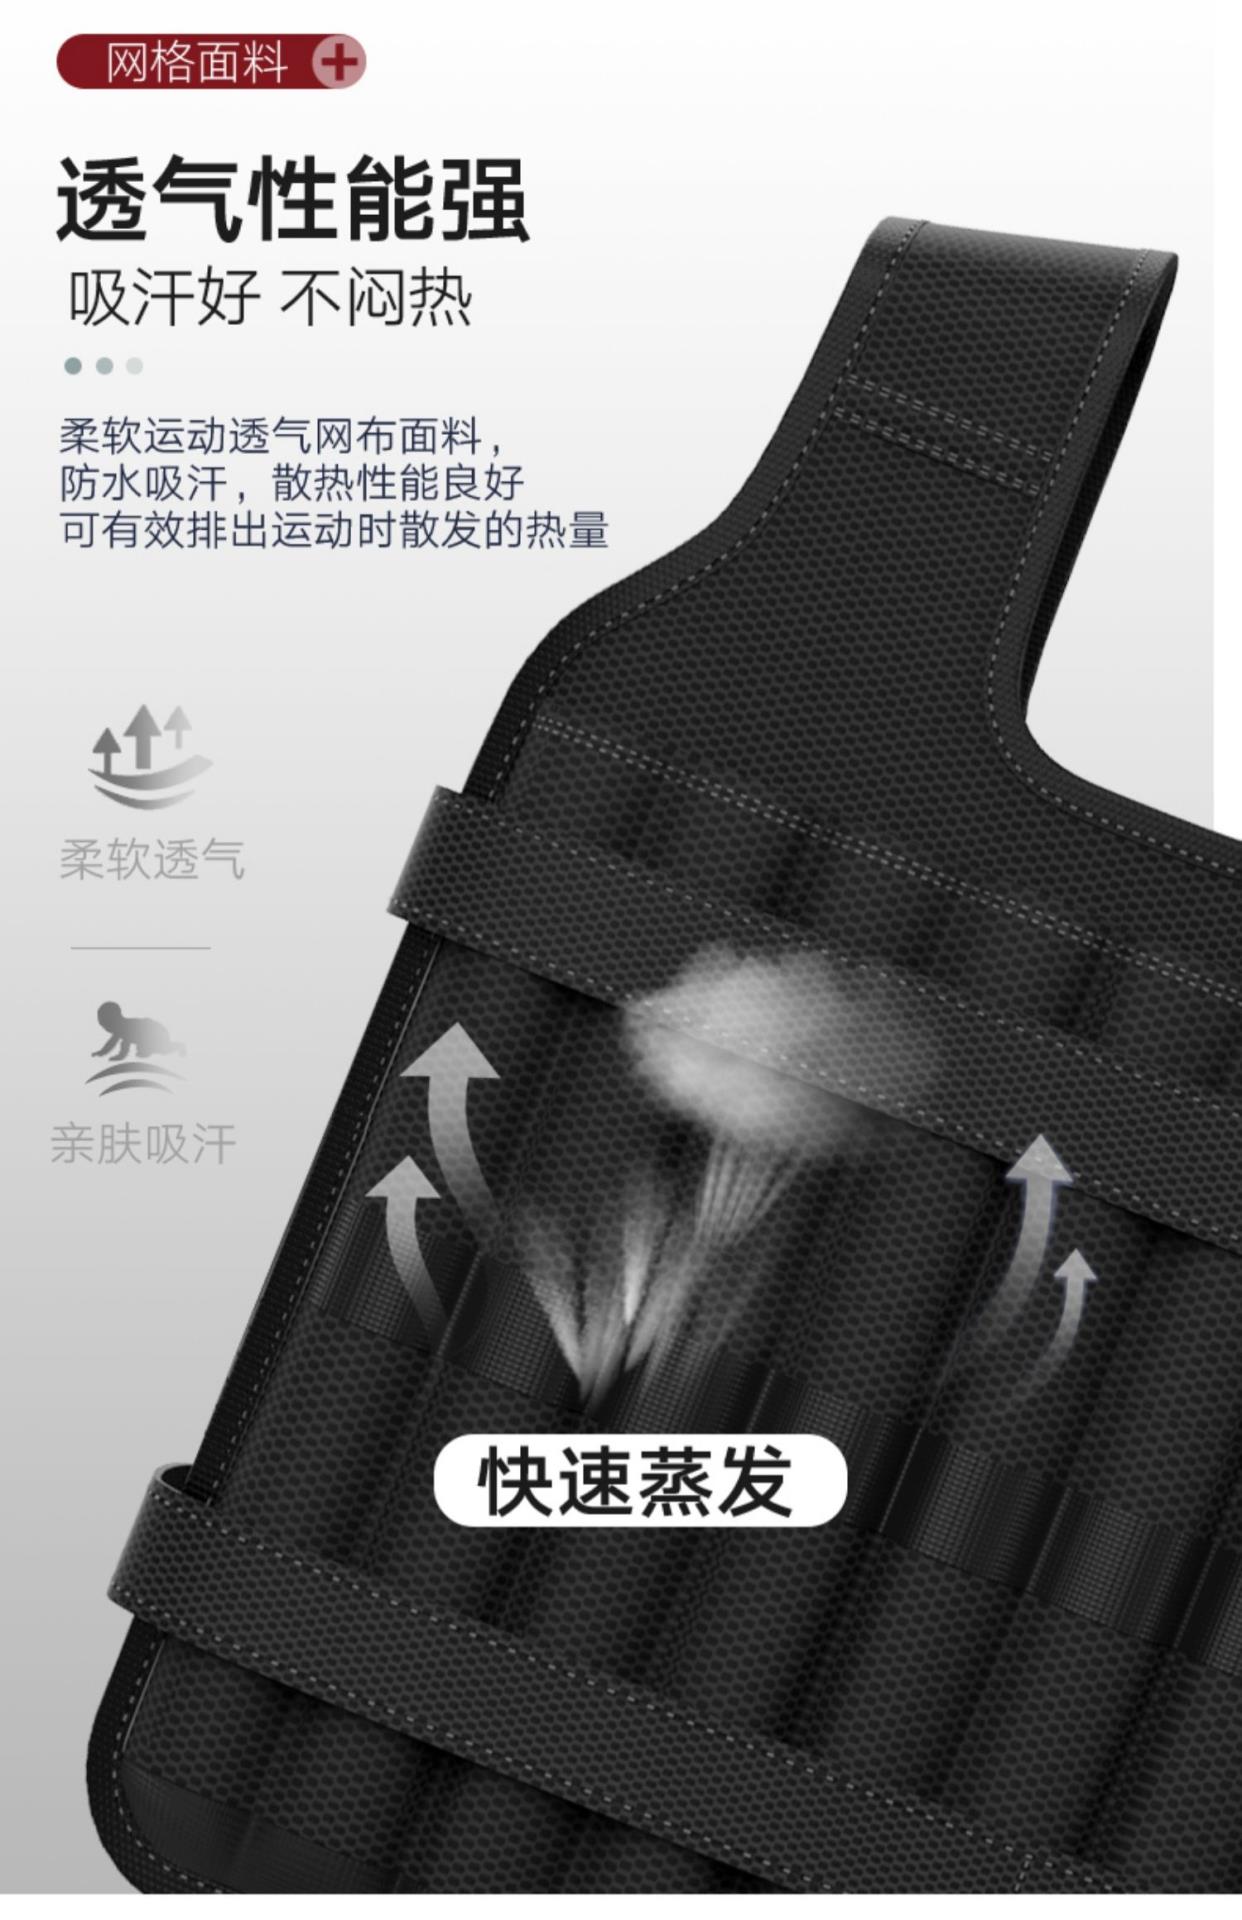 Trọng lượng chính hãng vest chạy vest vô hình thép tấm siêu mỏng chì khối cát quần áo thiết bị thể dục dụng cụ thể thao xà cạp - Taekwondo / Võ thuật / Chiến đấu